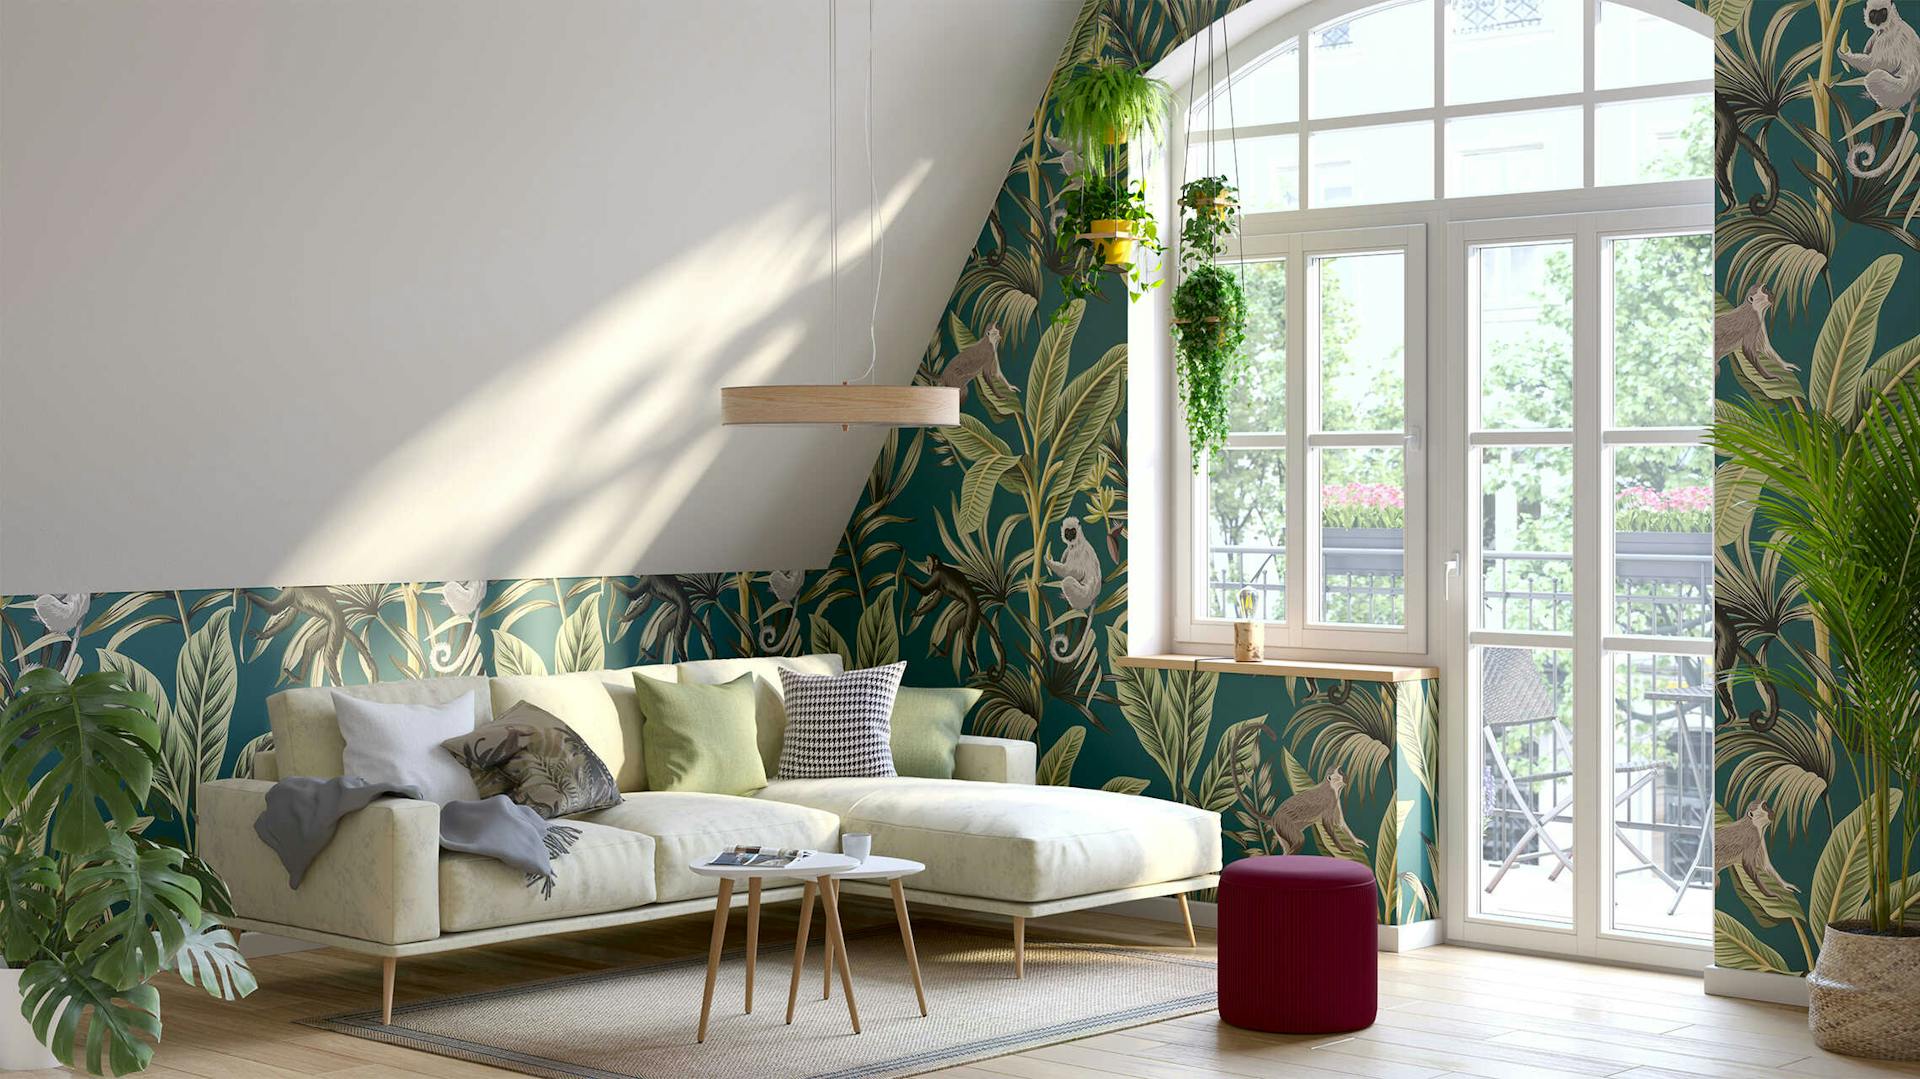 Ein Wohnzimmer mit einer weißen Dachschräge, während der Rest der Wände eine Tapete in Dschungeloptik als Wandgestaltung nutzen.